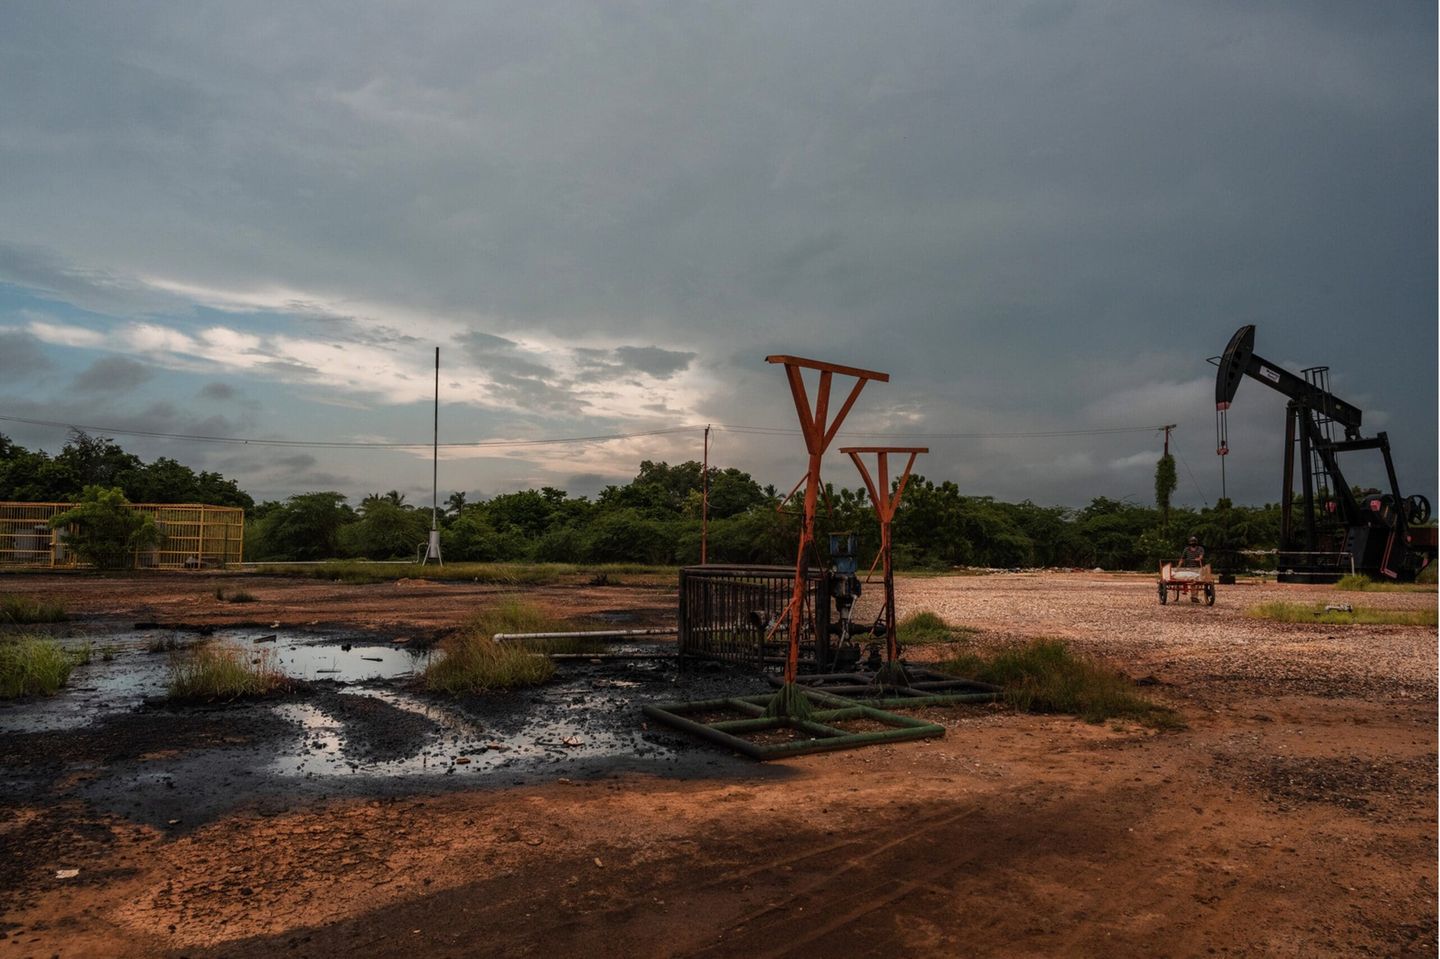 Die Ölpumpen in Cabimas stehen still, doch Lecks verseuchen die gesamte Stadt mit Öl